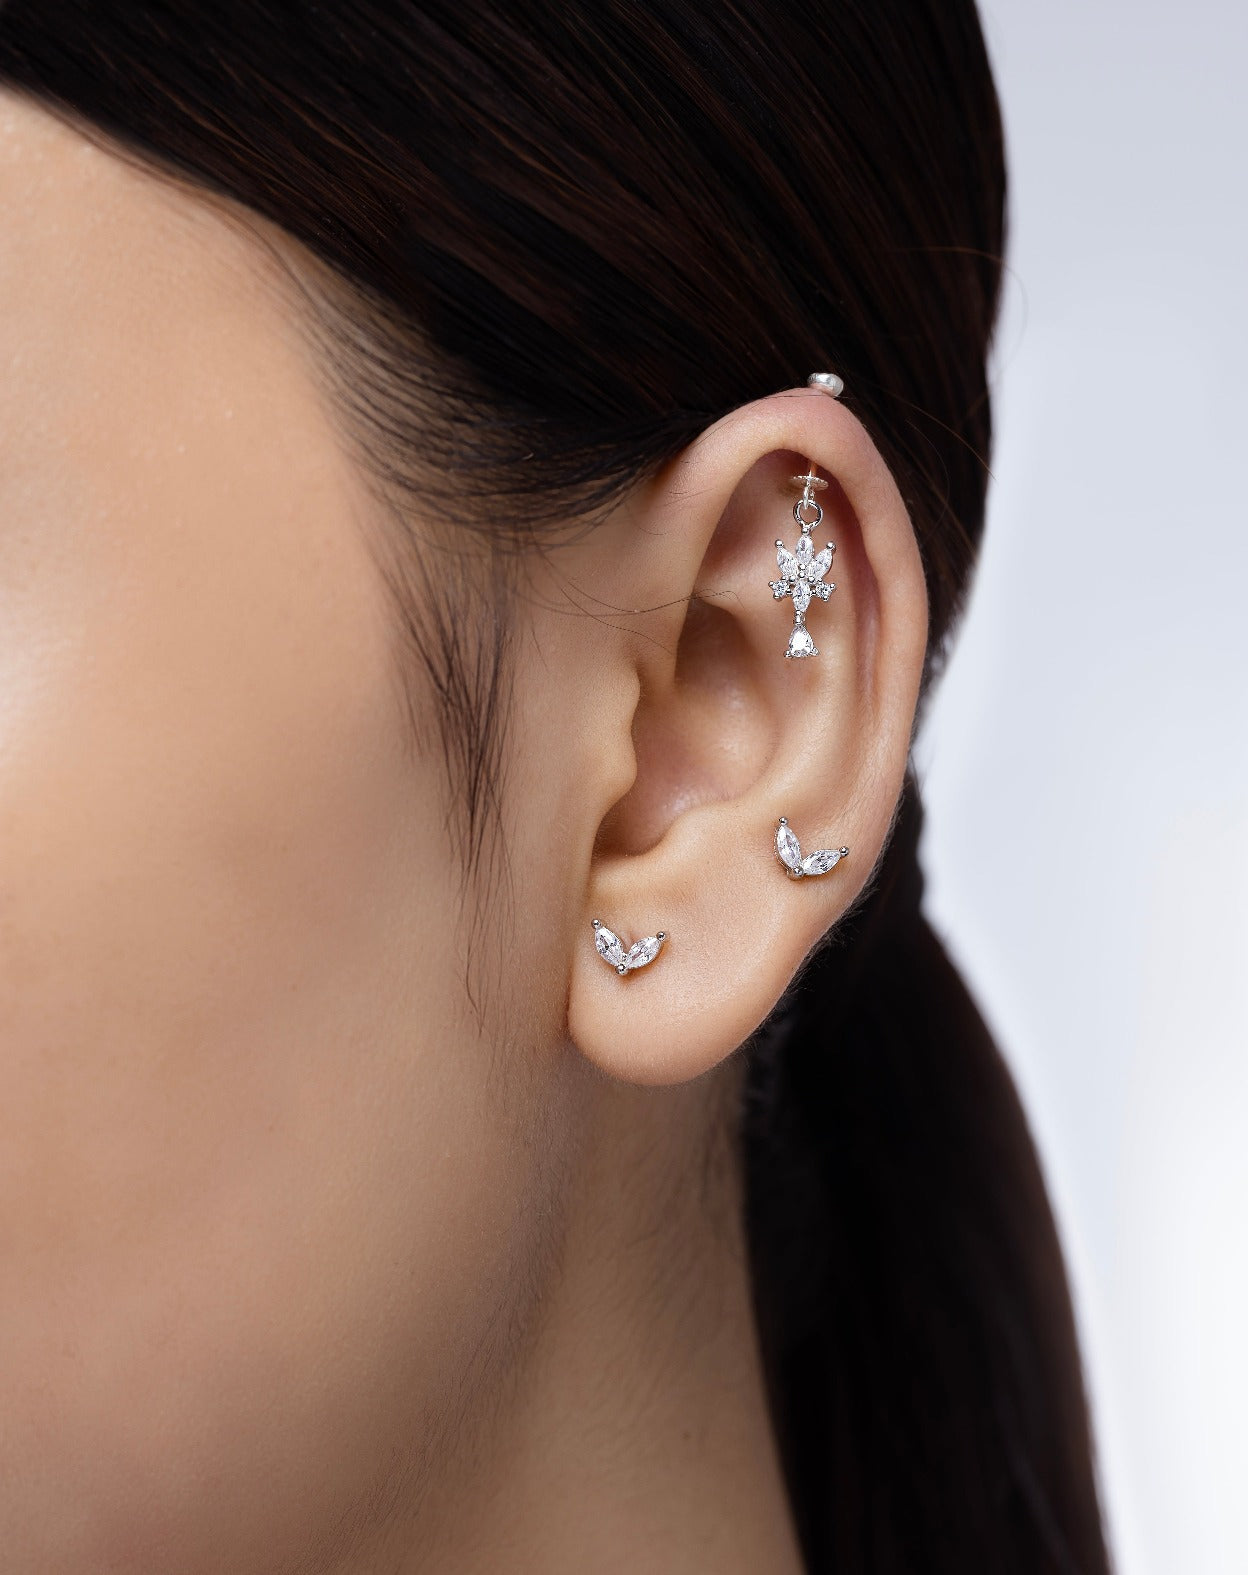 Two petal stud earring